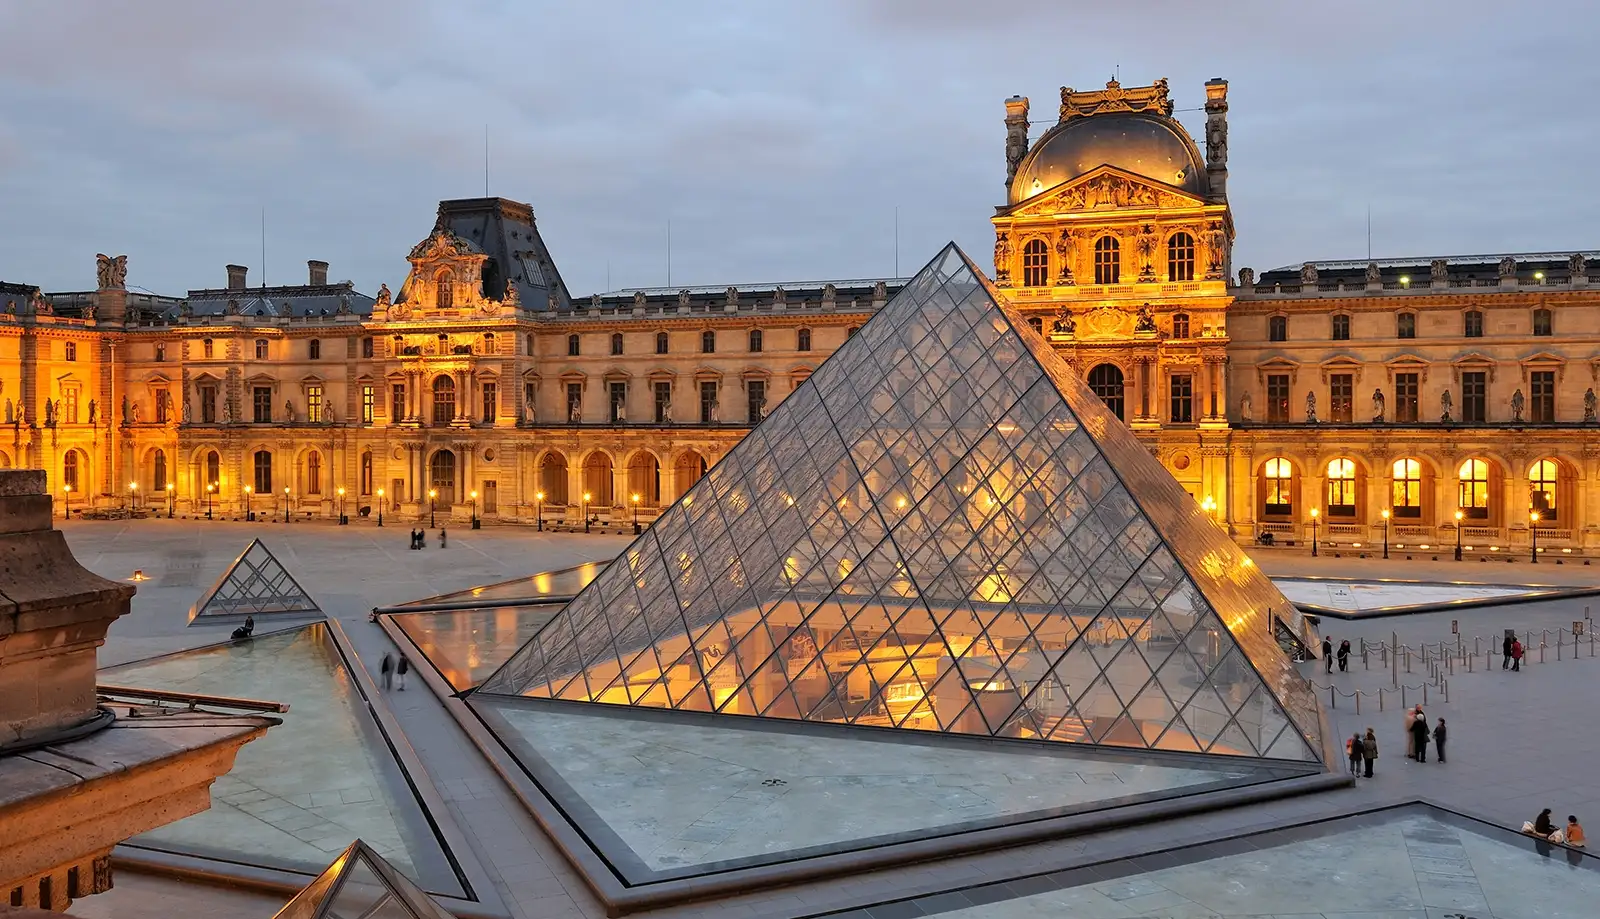 Bảo tàng Louvre vốn là một pháo đài được xây dựng vào năm 1190